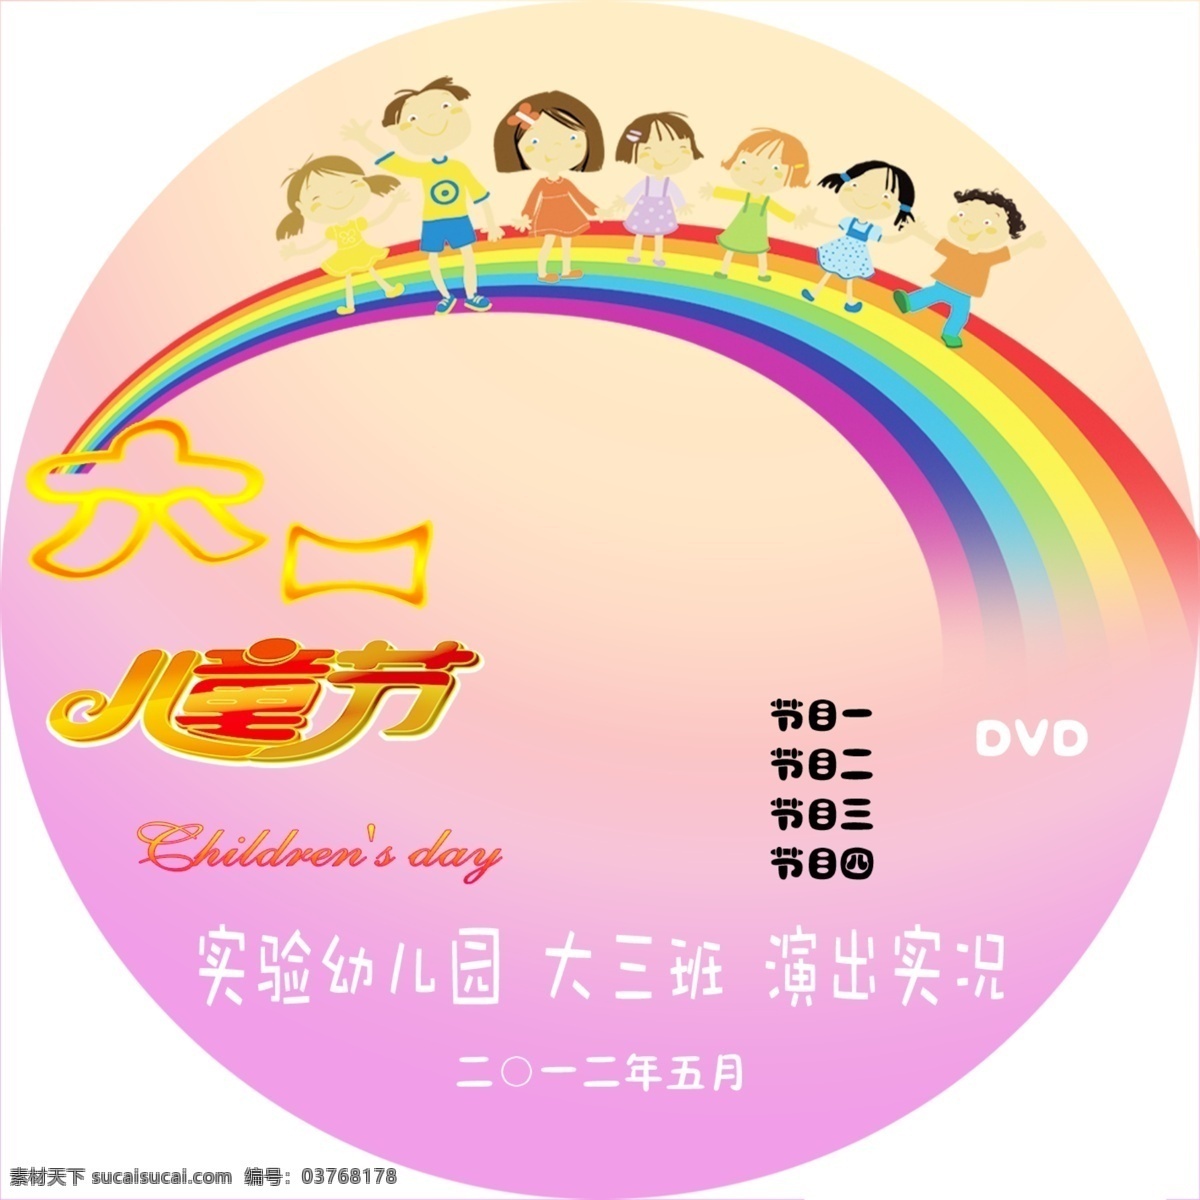 彩虹 广告设计模板 卡通小孩 六一儿童节 源文件 光盘 模板下载 光盘节目 节日素材